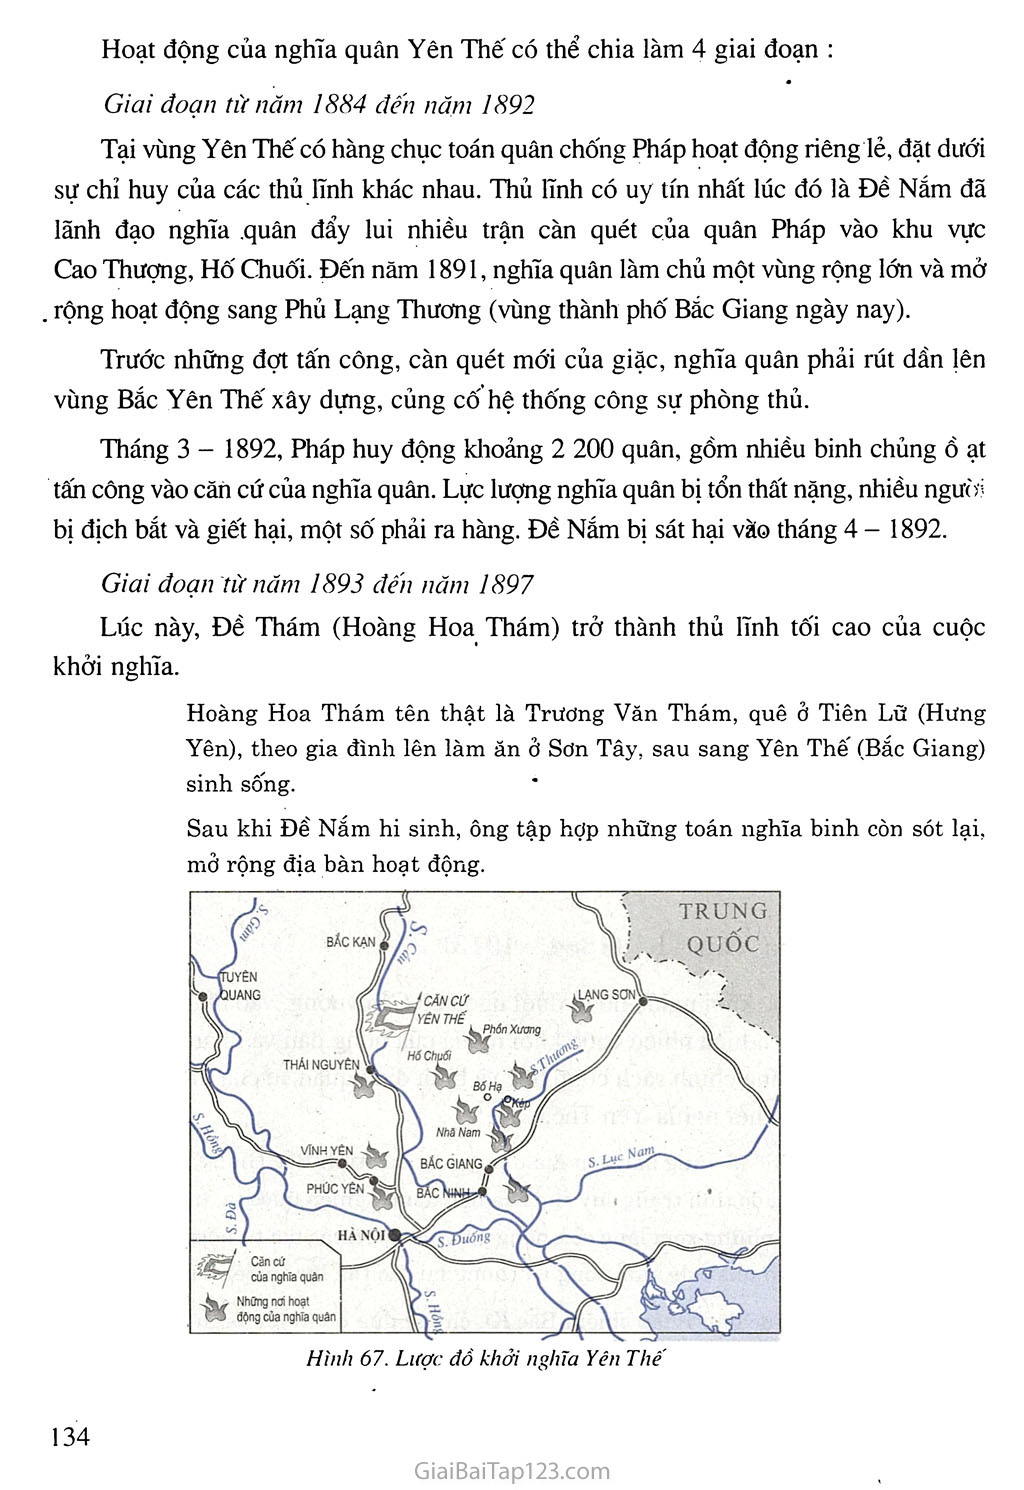 Bài 21. Phong trào yêu nước chống Pháp của nhân dân Việt Nam trong những năm cuối thế kỉ XIX trang 11